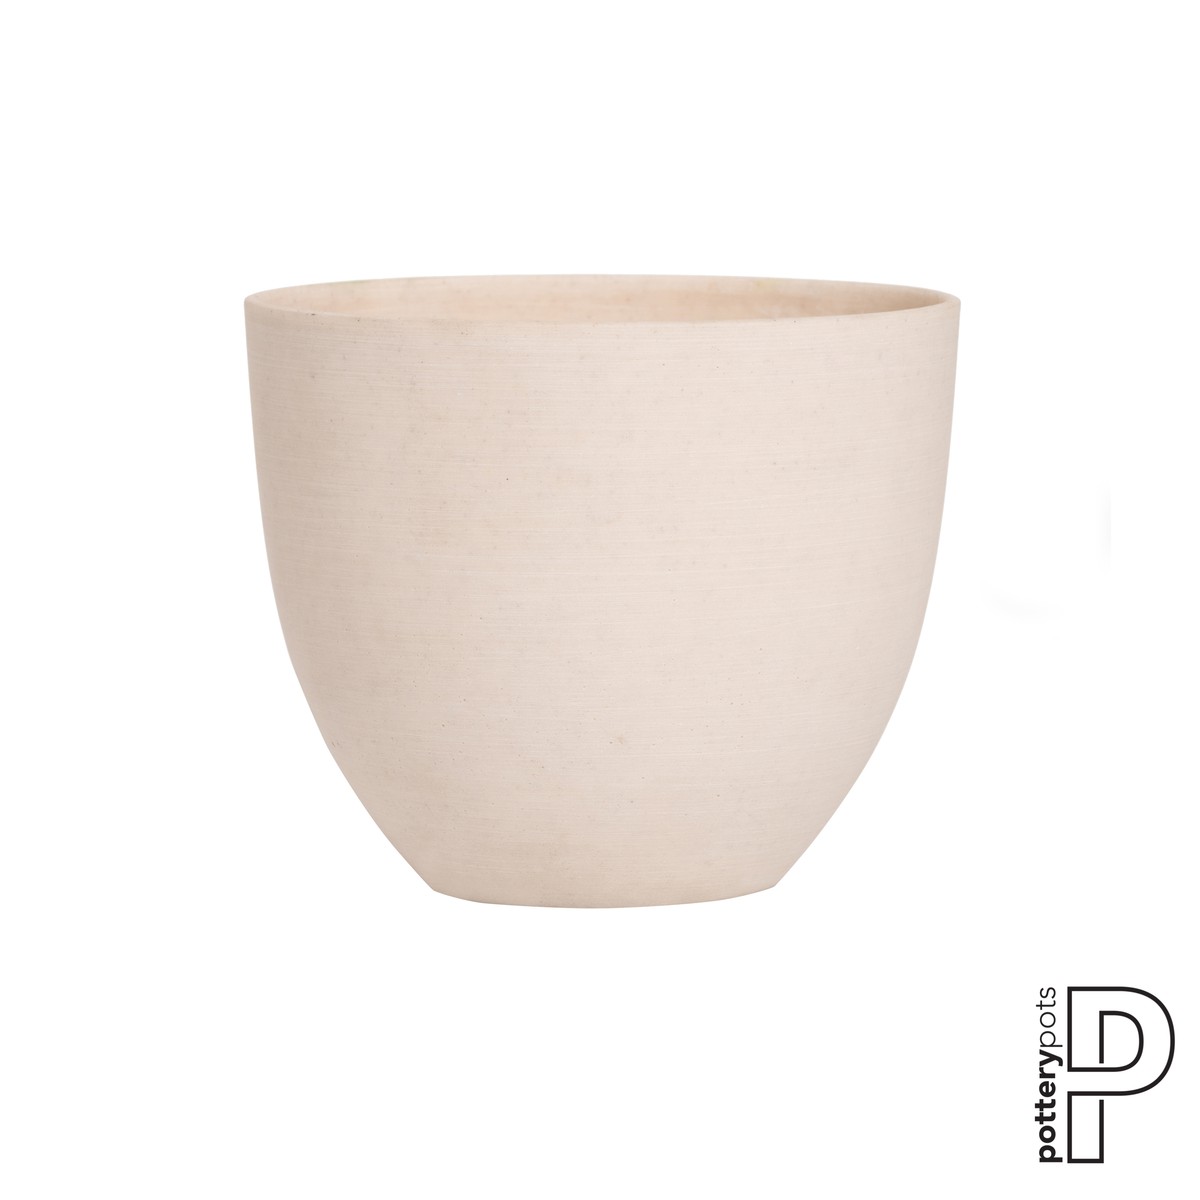 Potterypot
Potterypot
Pottery Pots  Coral S Blanc de Meudon Diam18x15cm